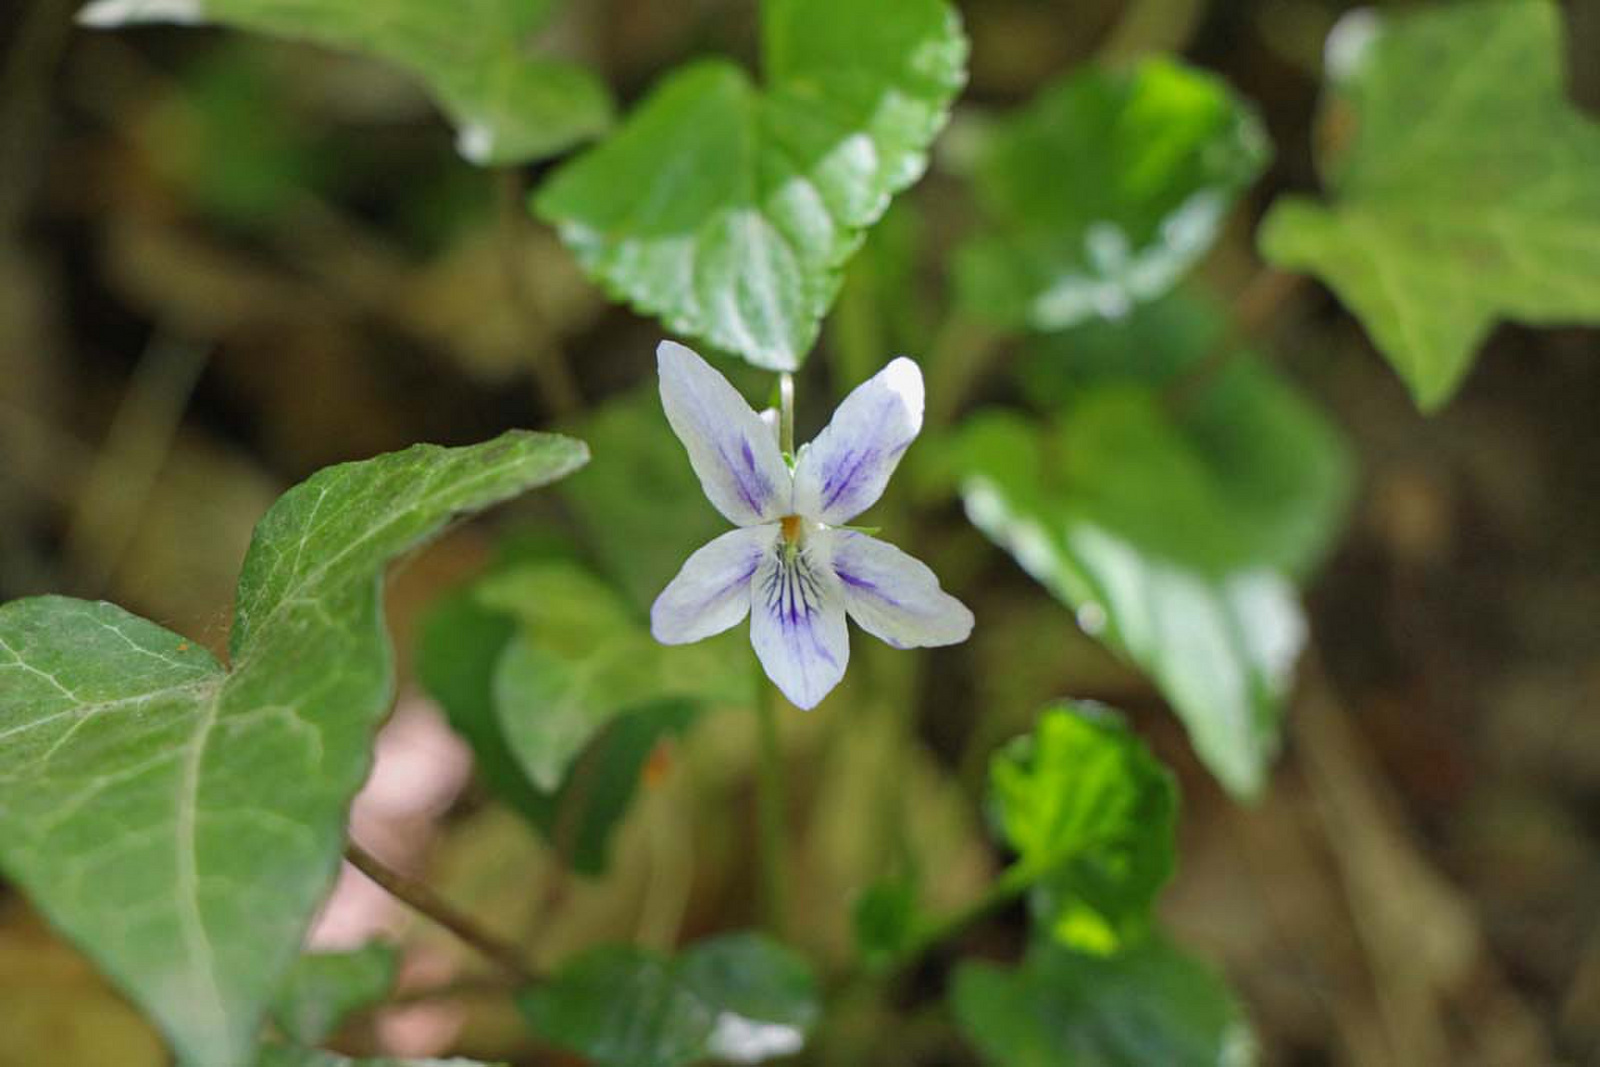 Viola riviniana - nagyvirágú ibolya